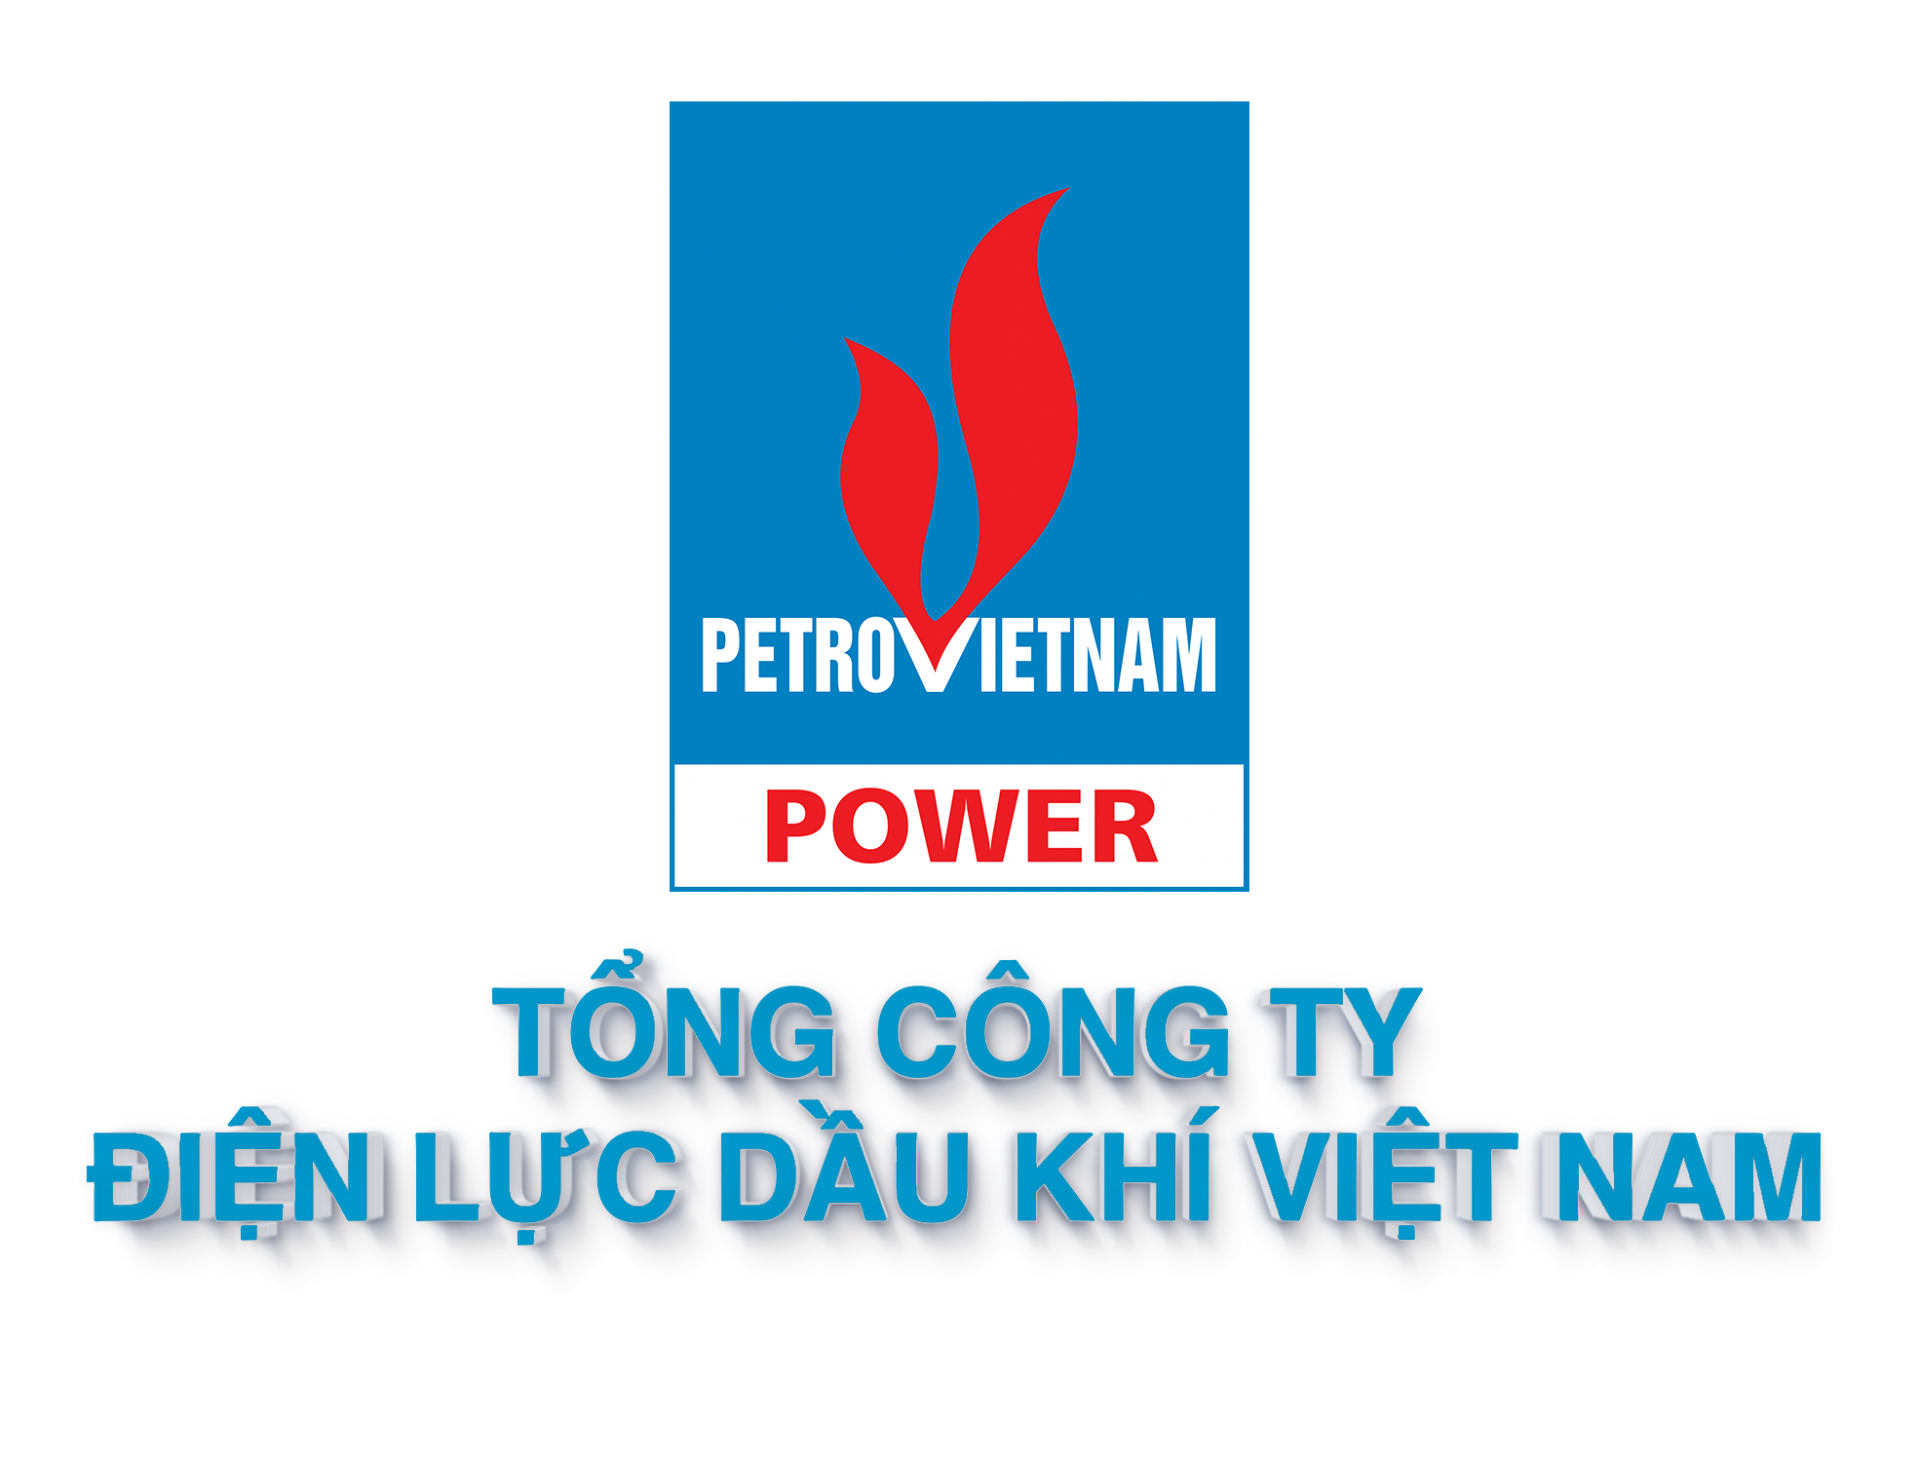 Tổng công ty Dầu khí Điện lực Dầu khí Việt Nam - PV Power